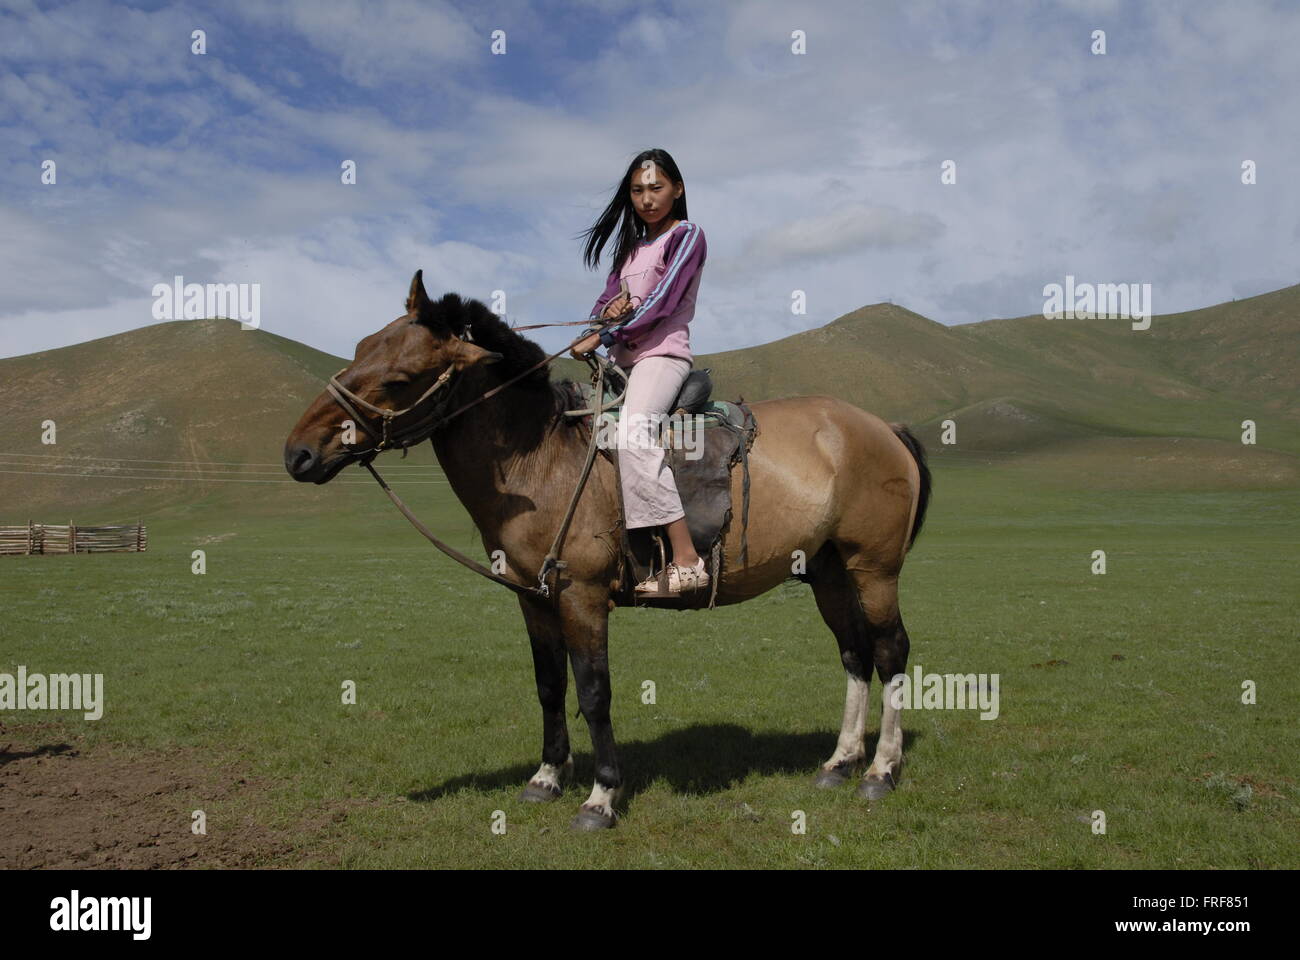 Mongolei - 30.07.2010 - Mongolei - mongolischen jungen auf ihrem Pferd - Sandrine Huet / Le Pictorium Stockfoto